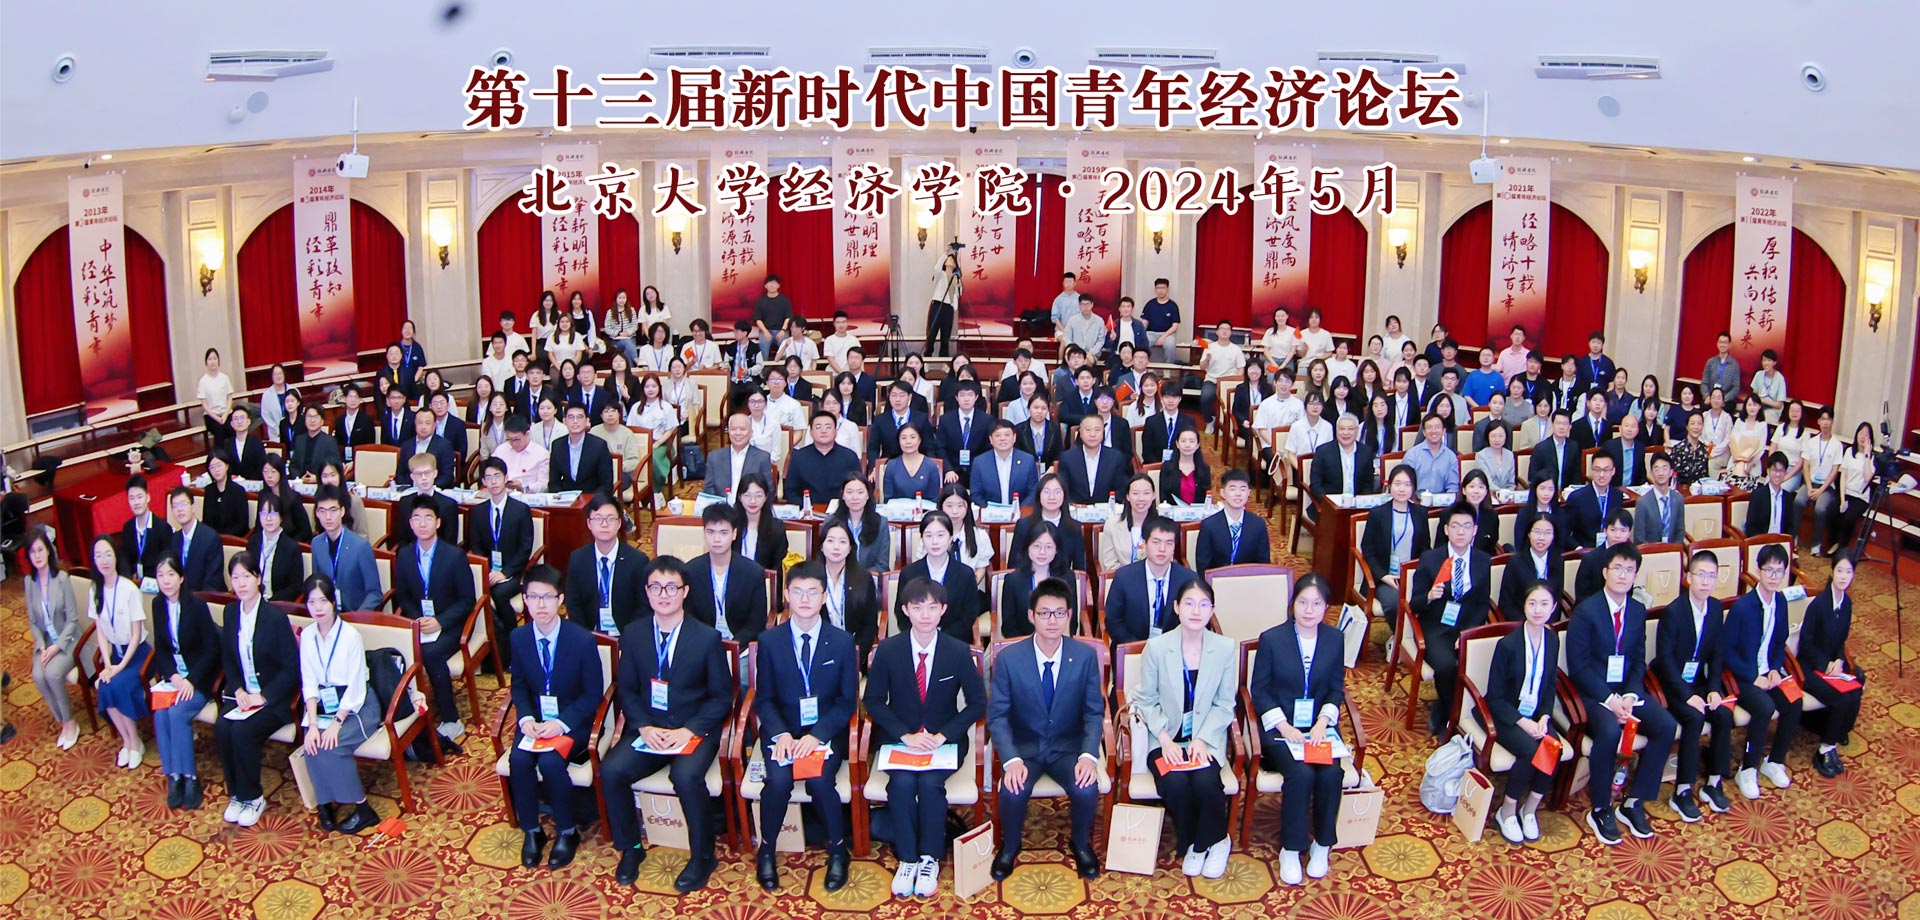 高质量发展·经彩青年说 | 北大亚星登录手机版举办第十三届新时代中国青年经济论坛